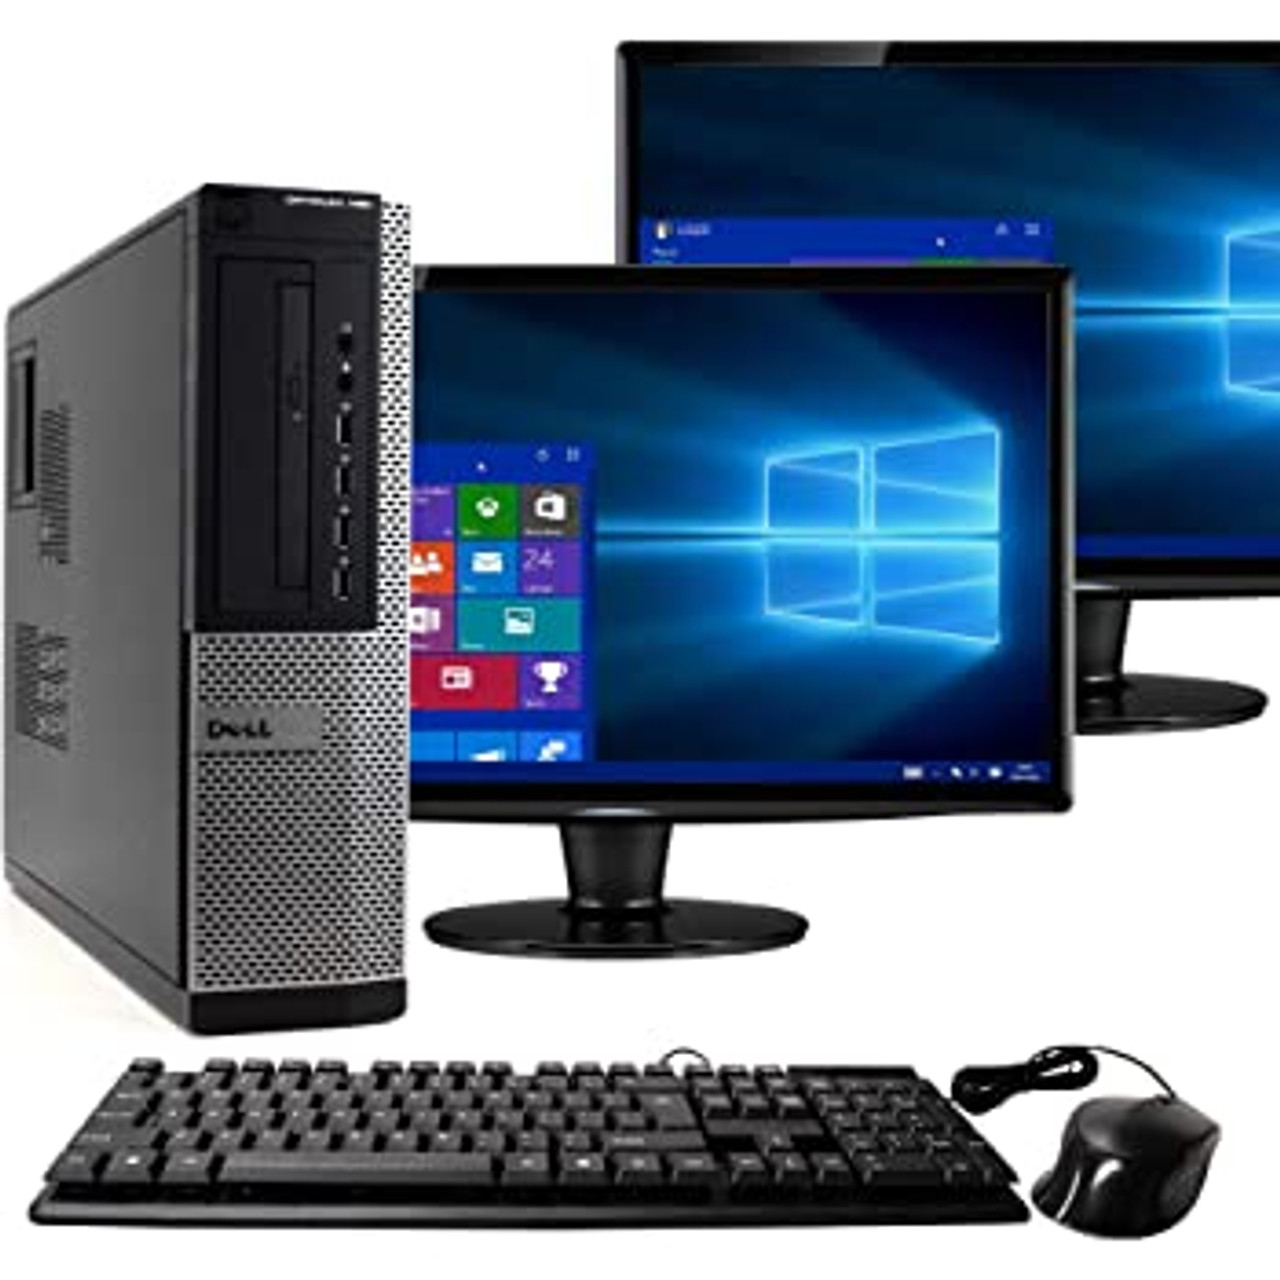  Dell OptiPlex Computer Desktop PC, Intel Core i5 3rd